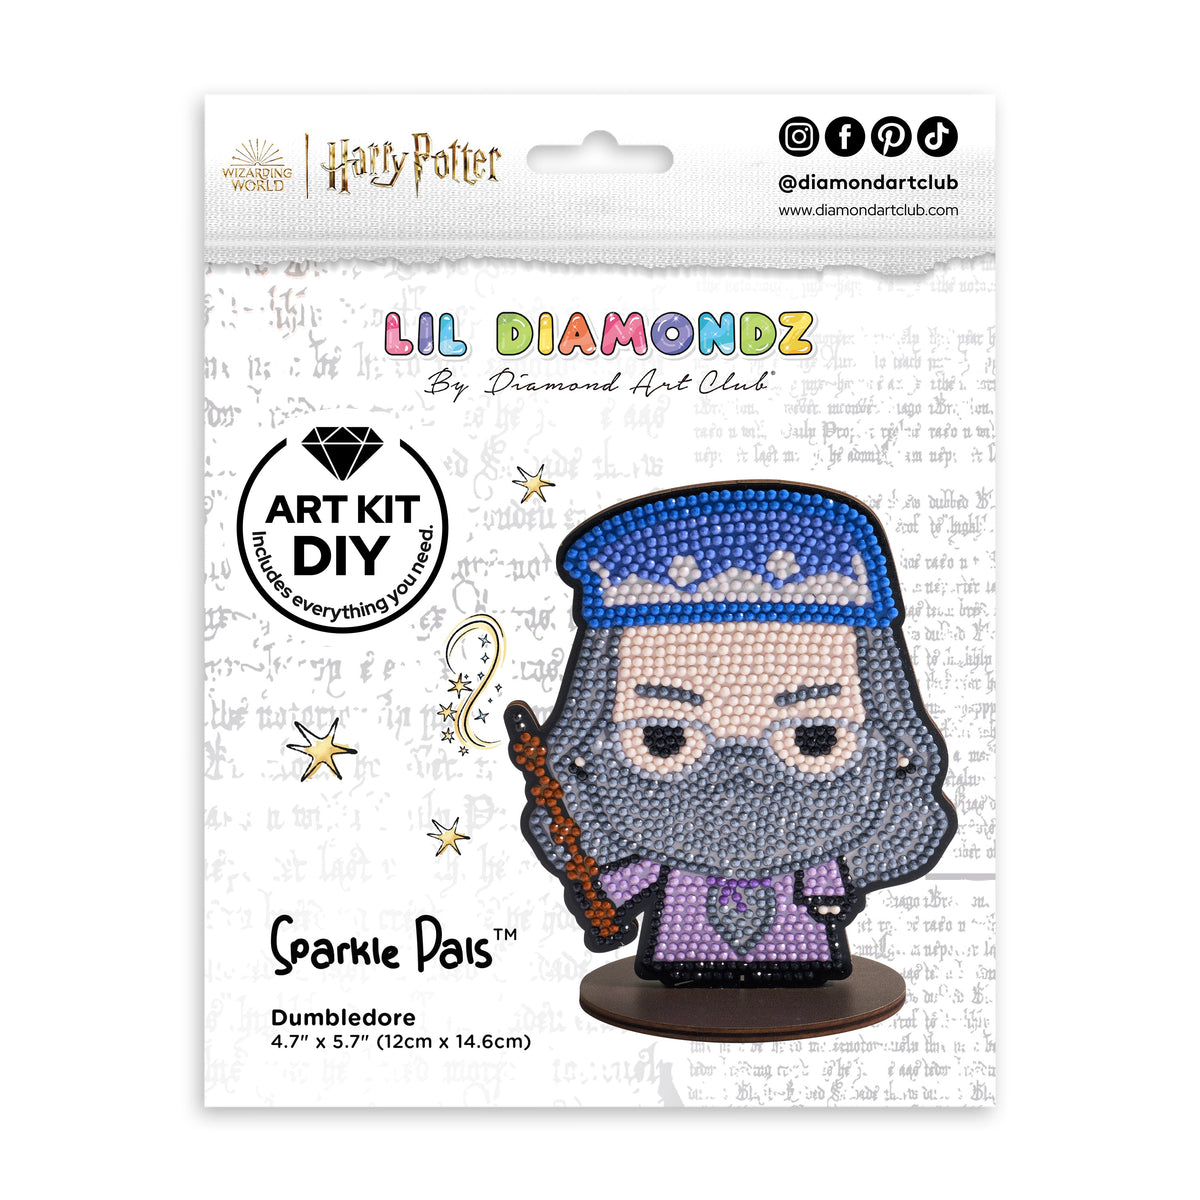 Diamond Painting Sparkle Pals™ - Dumbledore 4.7" x 5.7" (12cm x 14.6cm) / Round with 11 Colors including 4 Fairy Dust Diamonds / 1,406